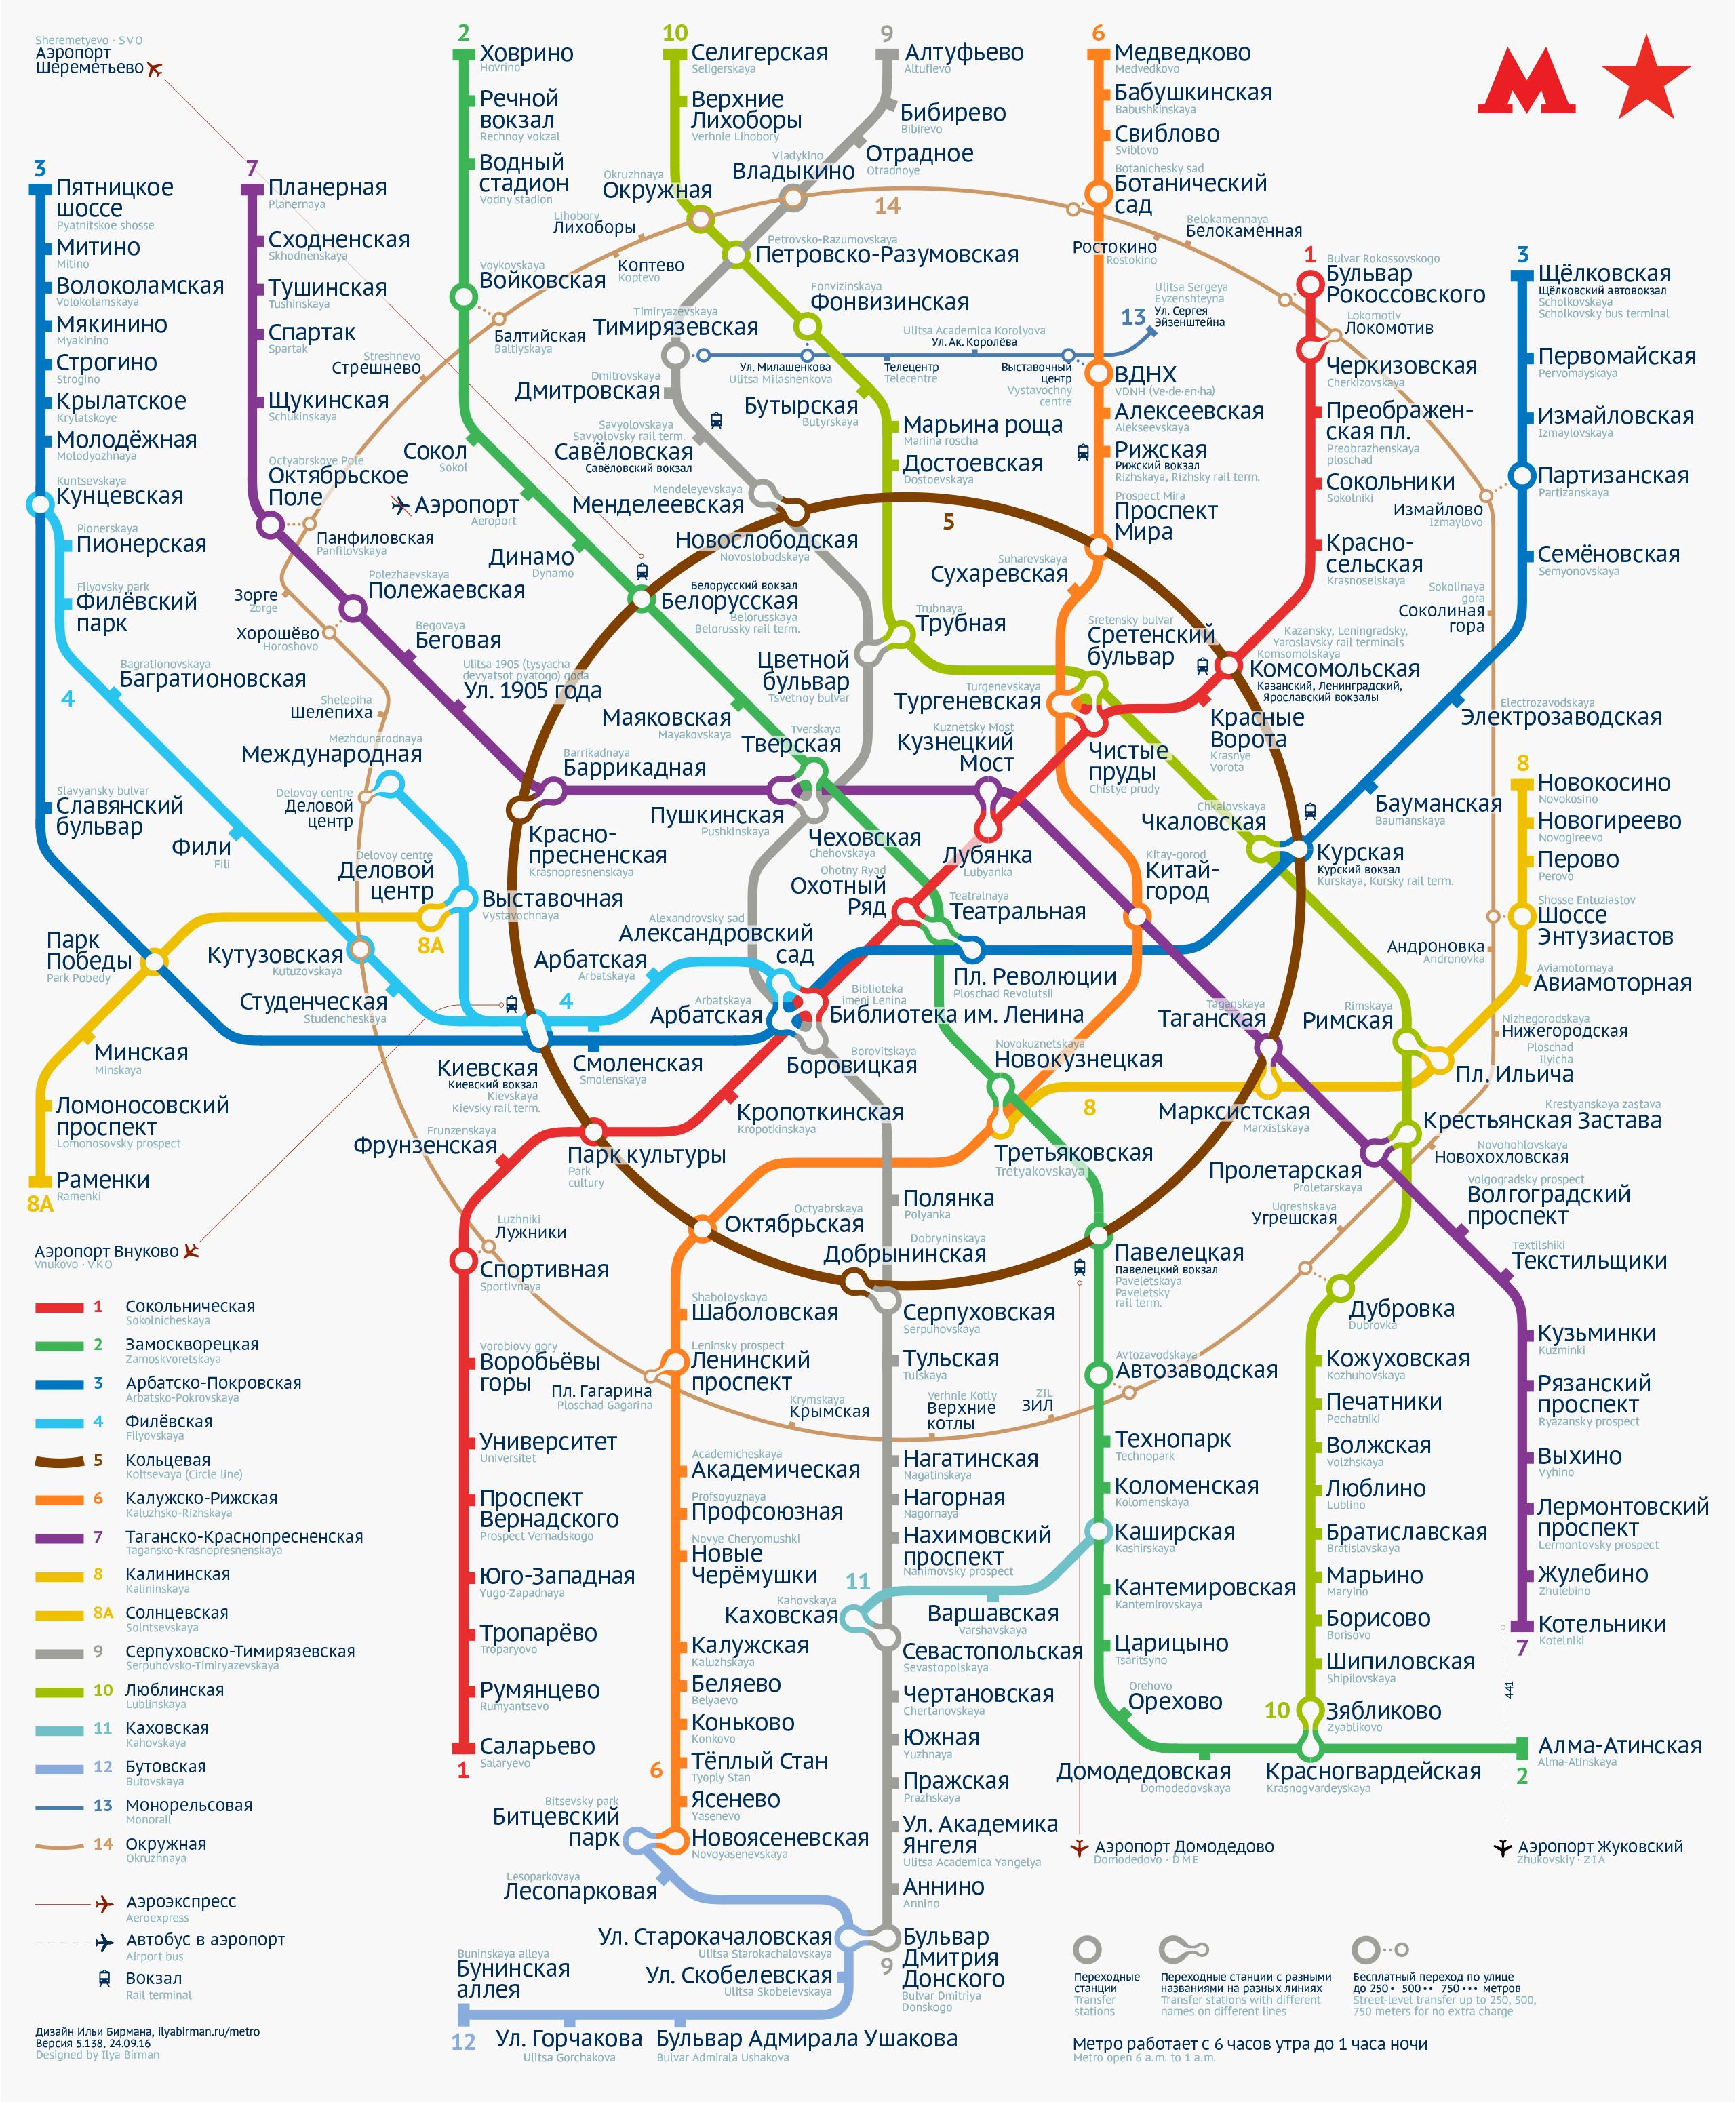 Cập nhật ngay bản đồ mới nhất của Moscow metro để đảm bảo cho chuyến đi của bạn trôi chảy hơn. Không chỉ bằng tiếng Nga, bản đồ còn có cả tiếng Anh giúp bạn dễ dàng điều chỉnh. Bấm vào hình ảnh liên quan để khám phá ngay.